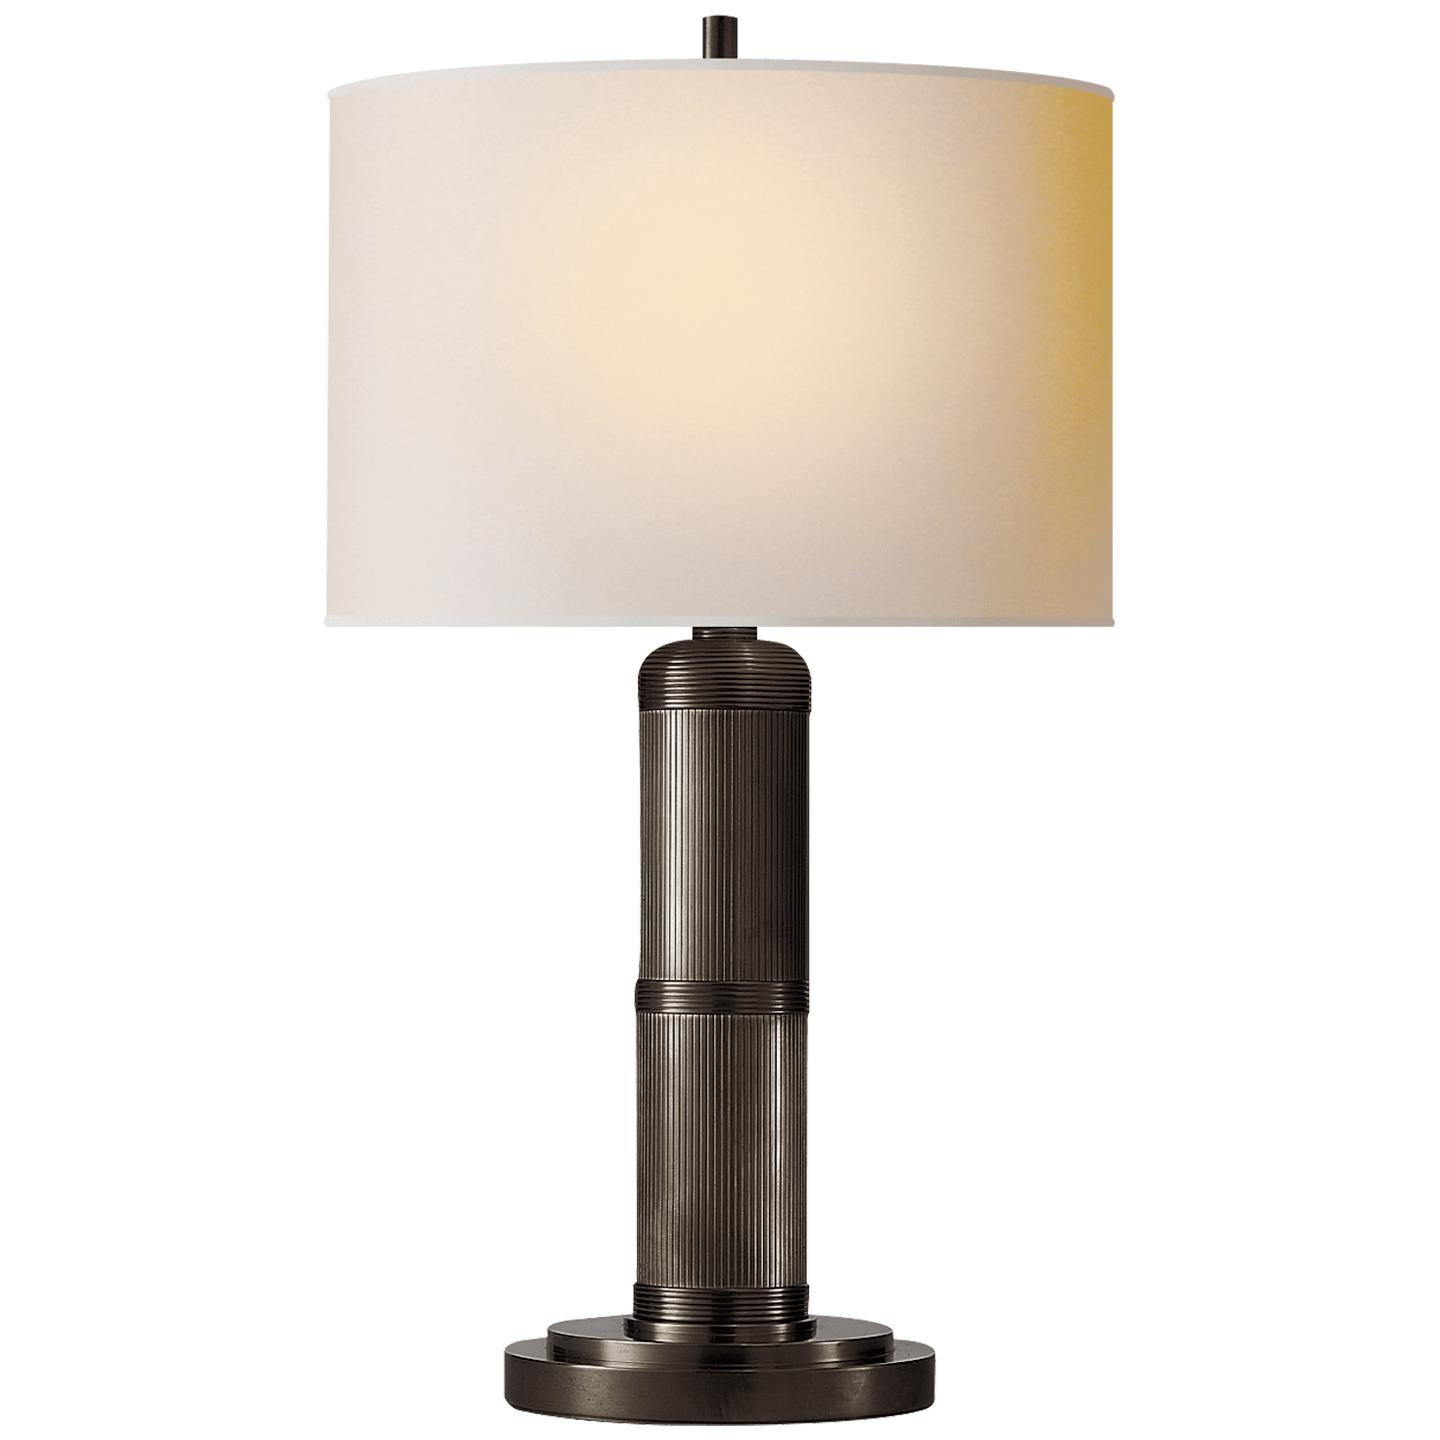 Купить Настольная лампа Longacre Small Table Lamp в интернет-магазине roooms.ru